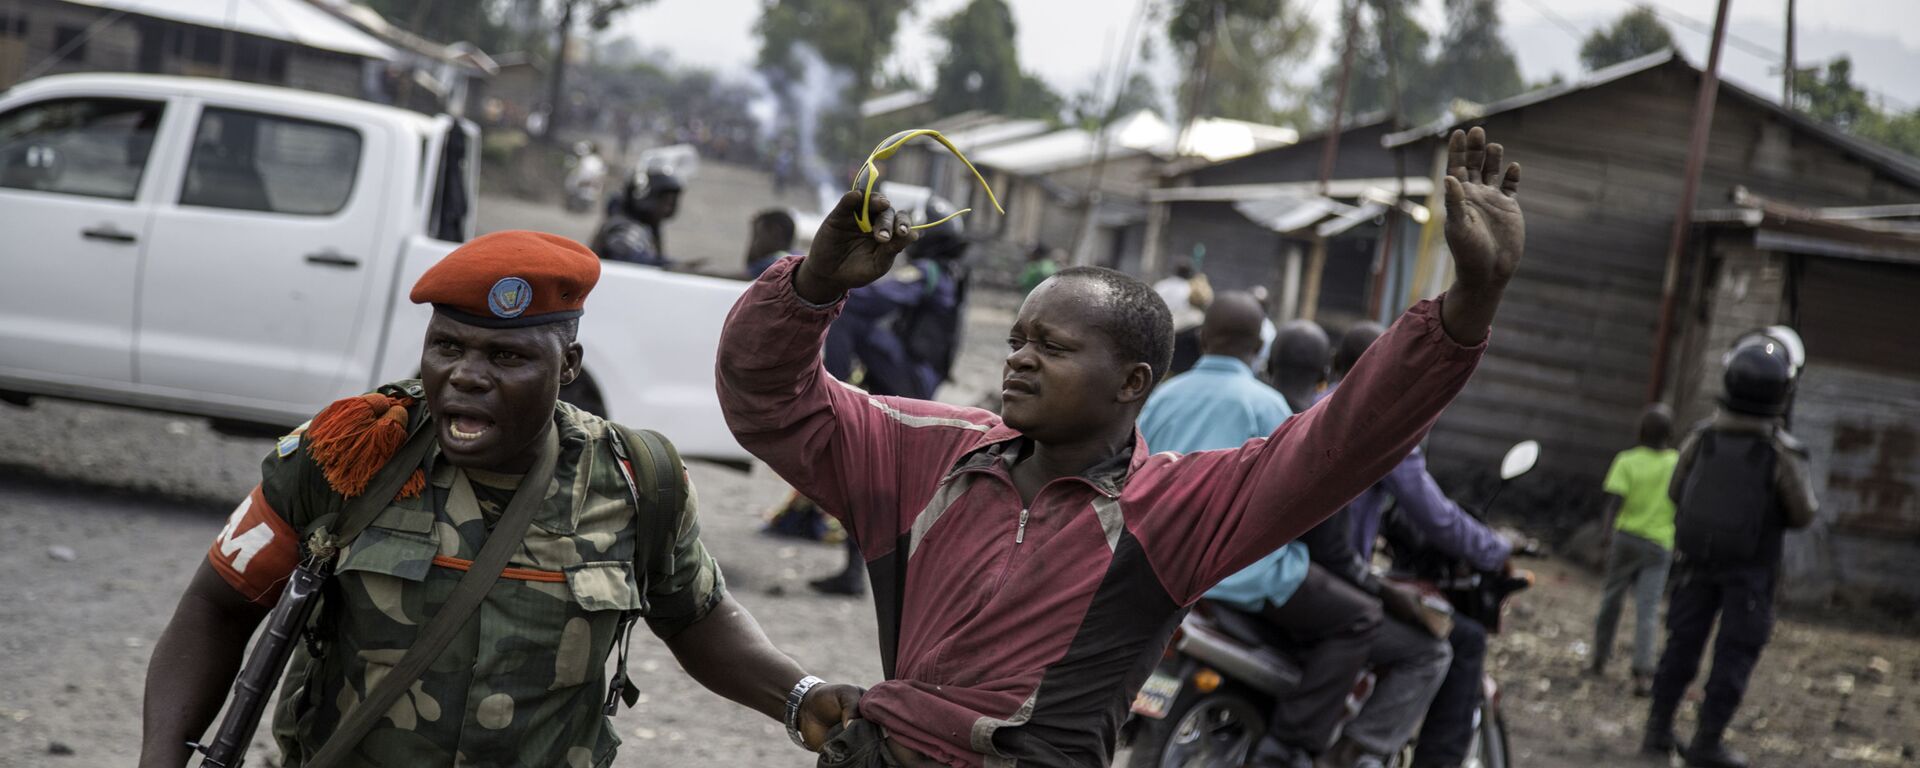 ضابط يلقي القبض على رجل حاول إغلاق الطريق بالحجارة، في حي ماجينغو في غوما، شرق جمهورية الكونغو الديمقراطية، في 19 ديسمبر/ كانون الأول عام 2016، - سبوتنيك عربي, 1920, 30.11.2021